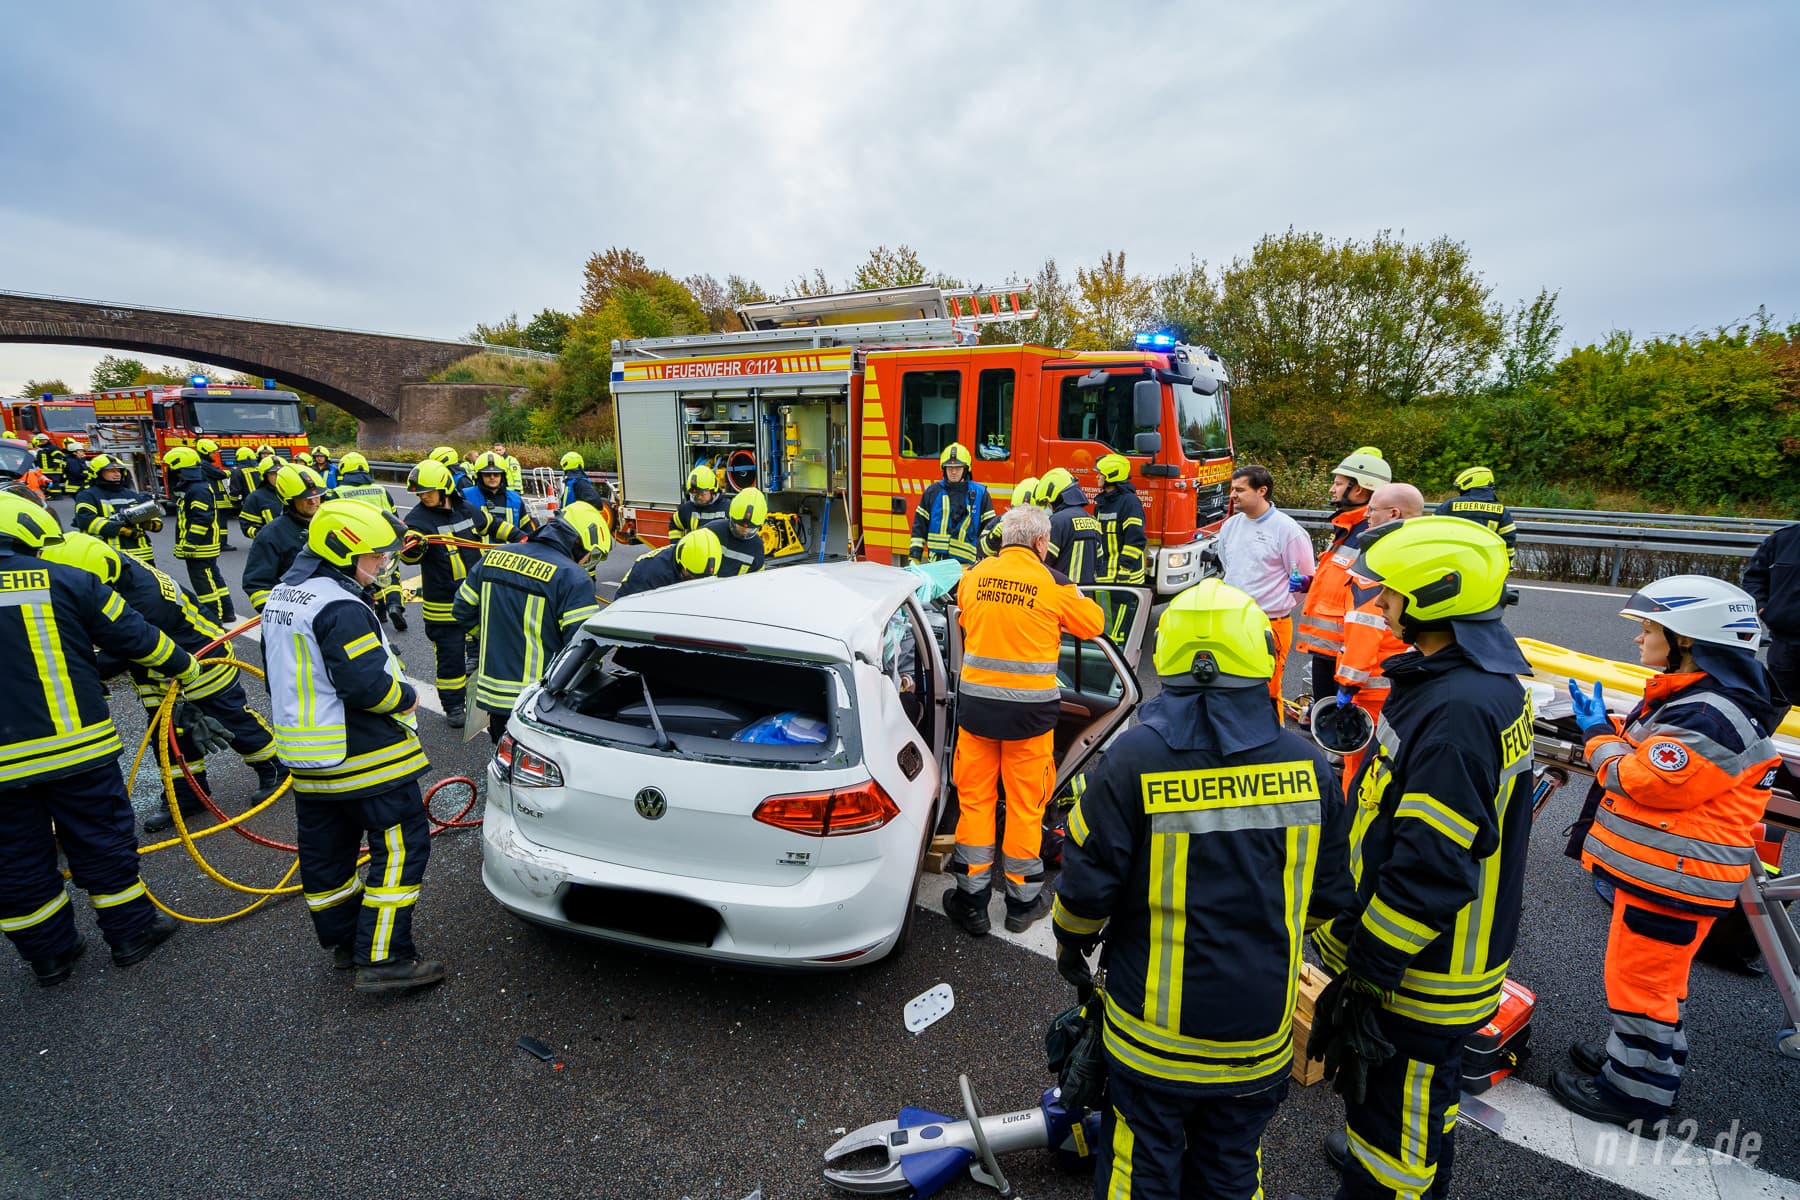 Feuerwehr und Rettungsdienst stehen am Auto, der Fahrer ist noch eingeschlossen (Foto: n112.de/Stefan Hillen)